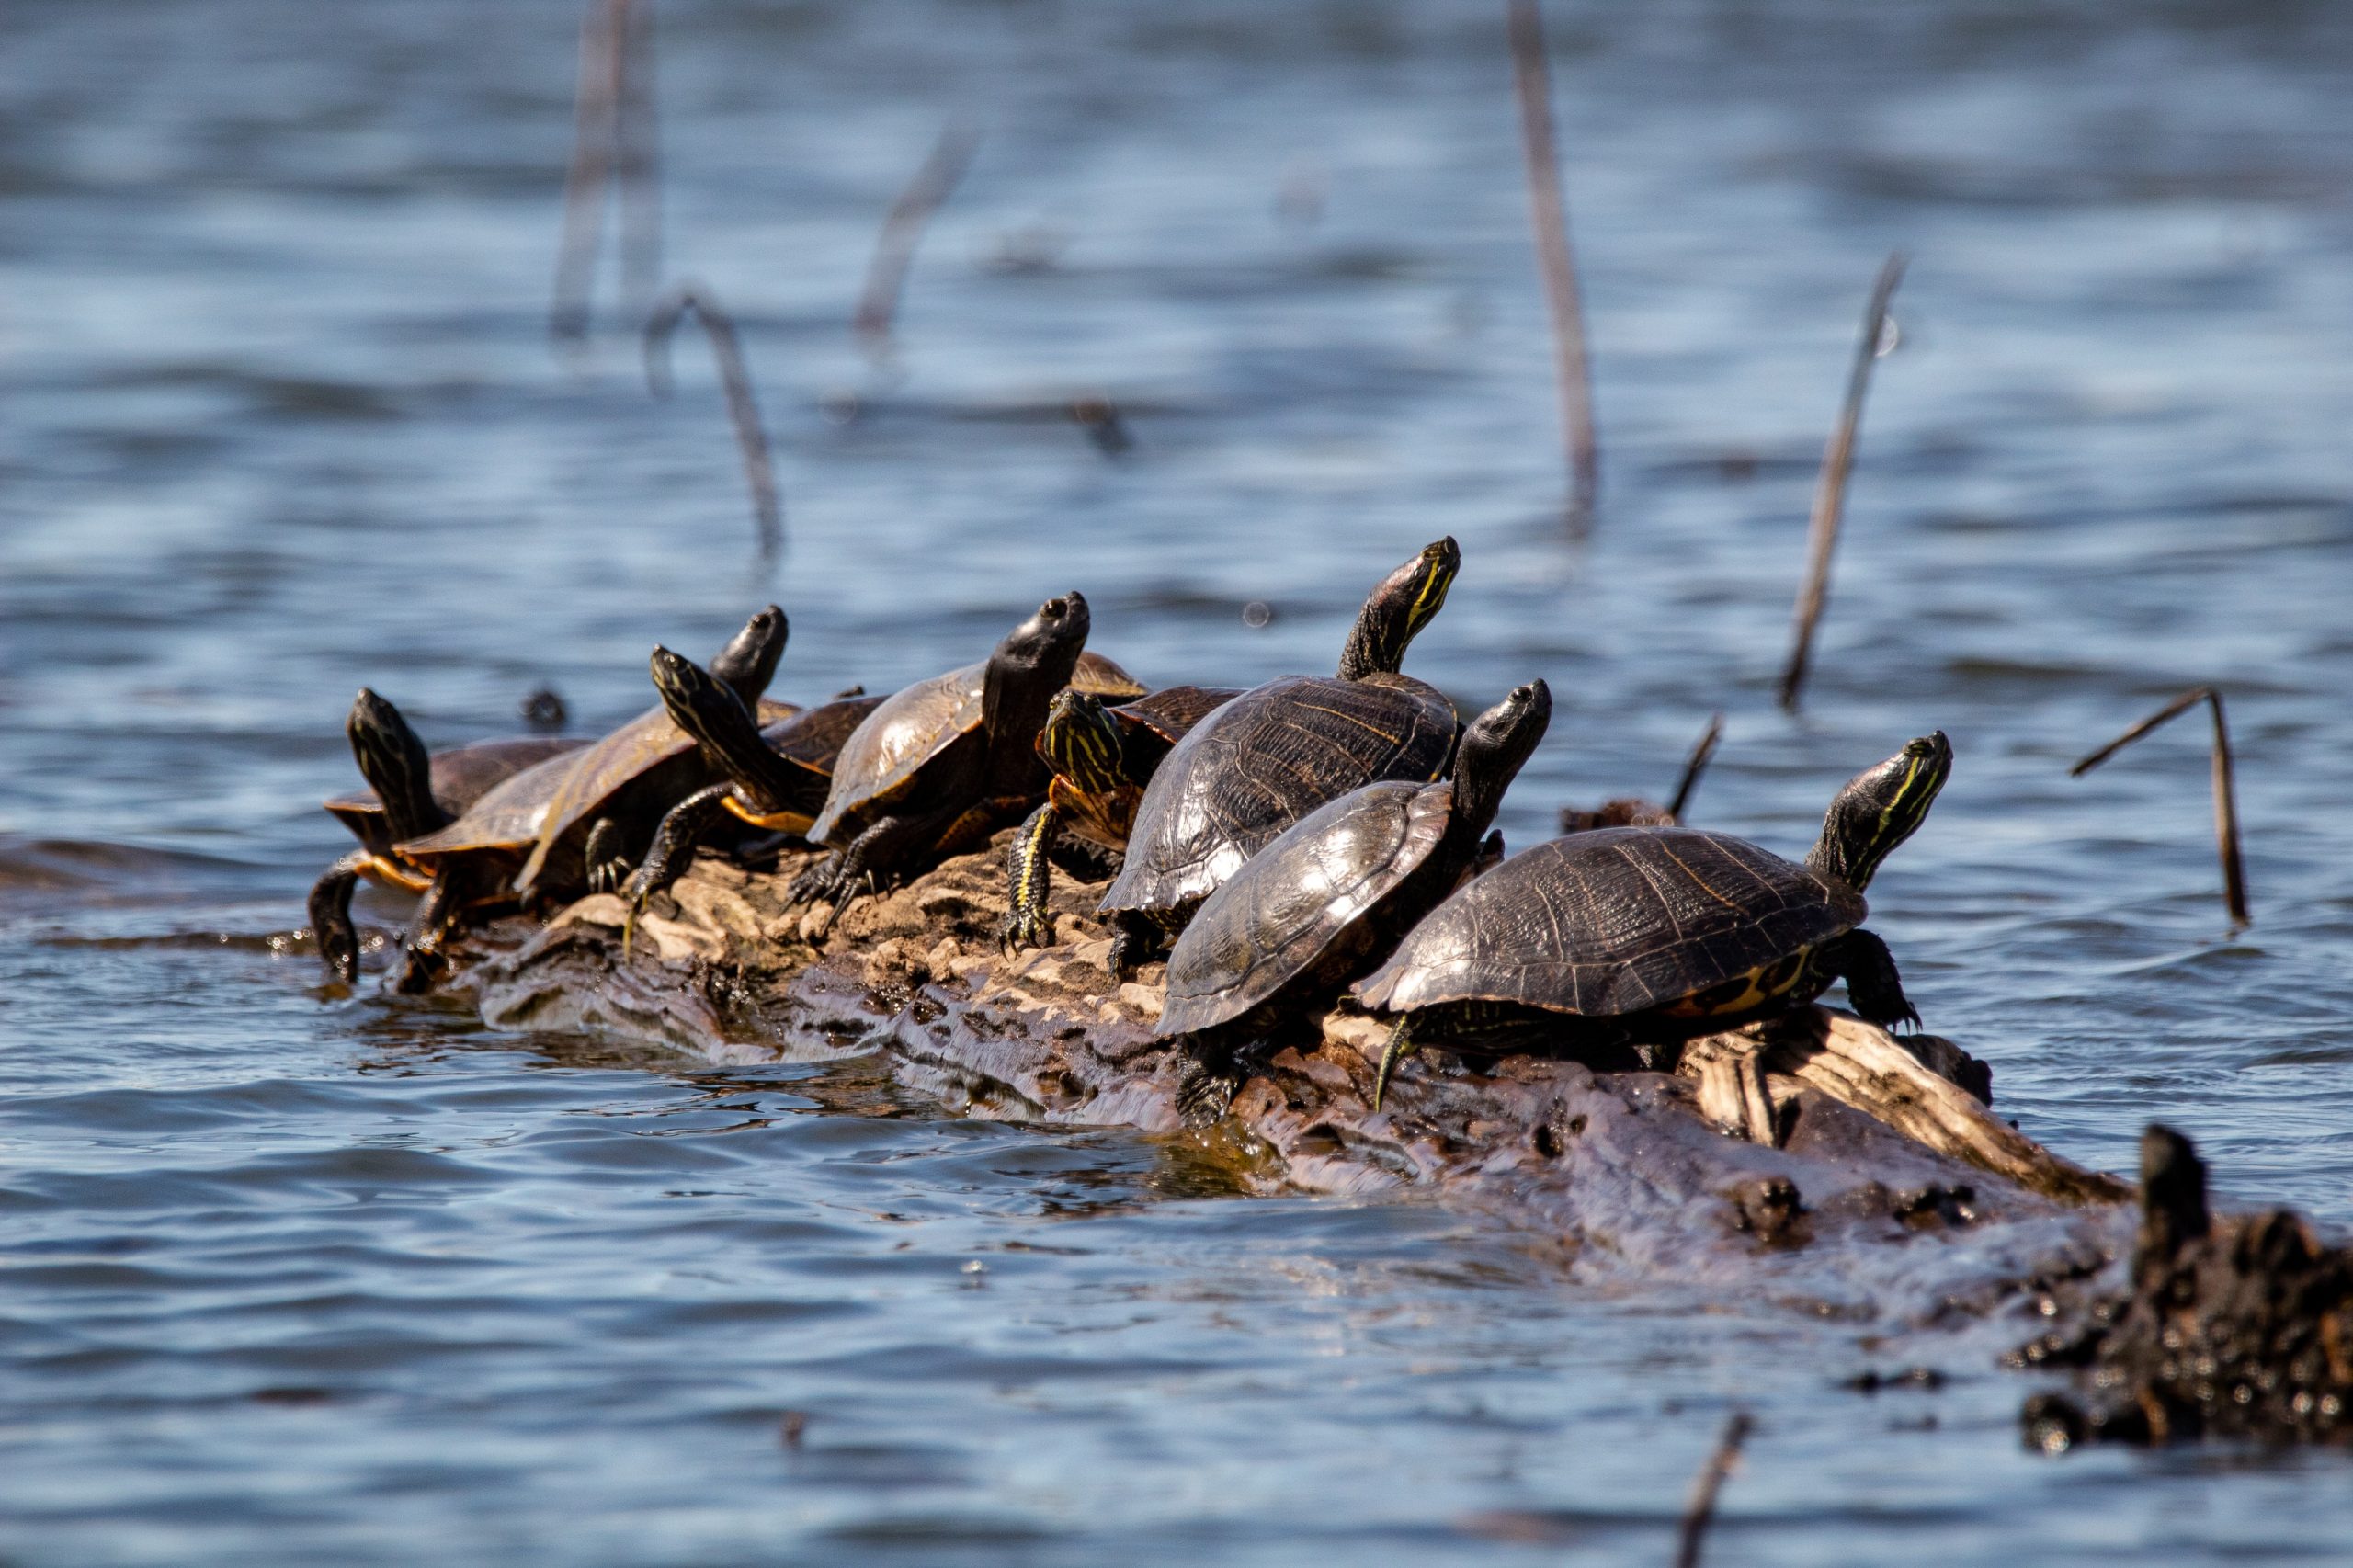 Une photographie de neuf tortues assises en ligne sur un rocher étroit et regardant dans différentes directions. Le rocher est partiellement immergé dans un lac bleu foncé.